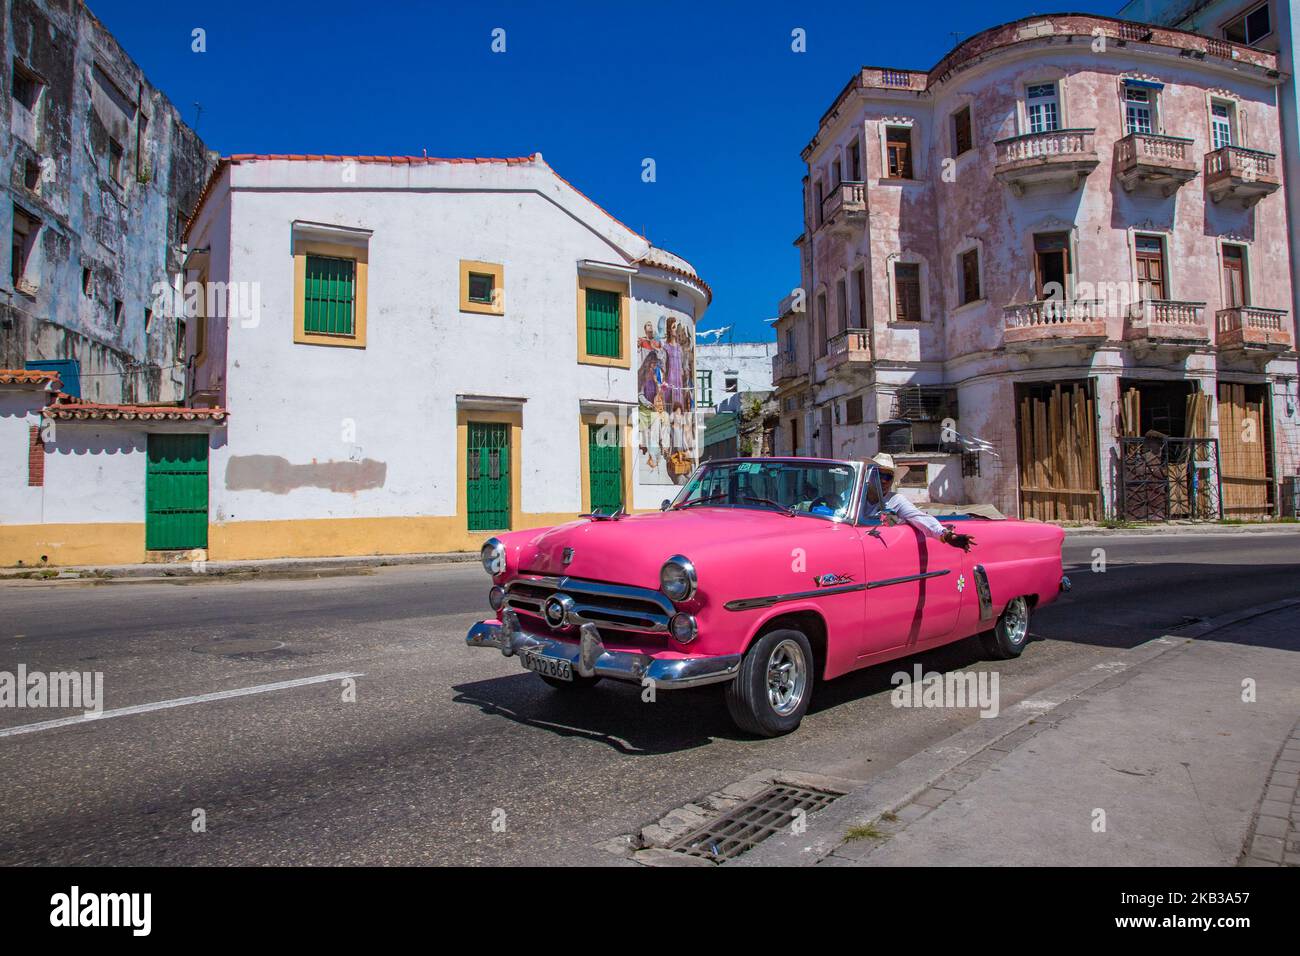 Voitures américaines anciennes mais très bien conservées à la Havane, Cuba.  Après 1959, Fidel Castro a interdit l'importation de voitures étrangères.  Le résultat a été de garder et de préserver les voitures